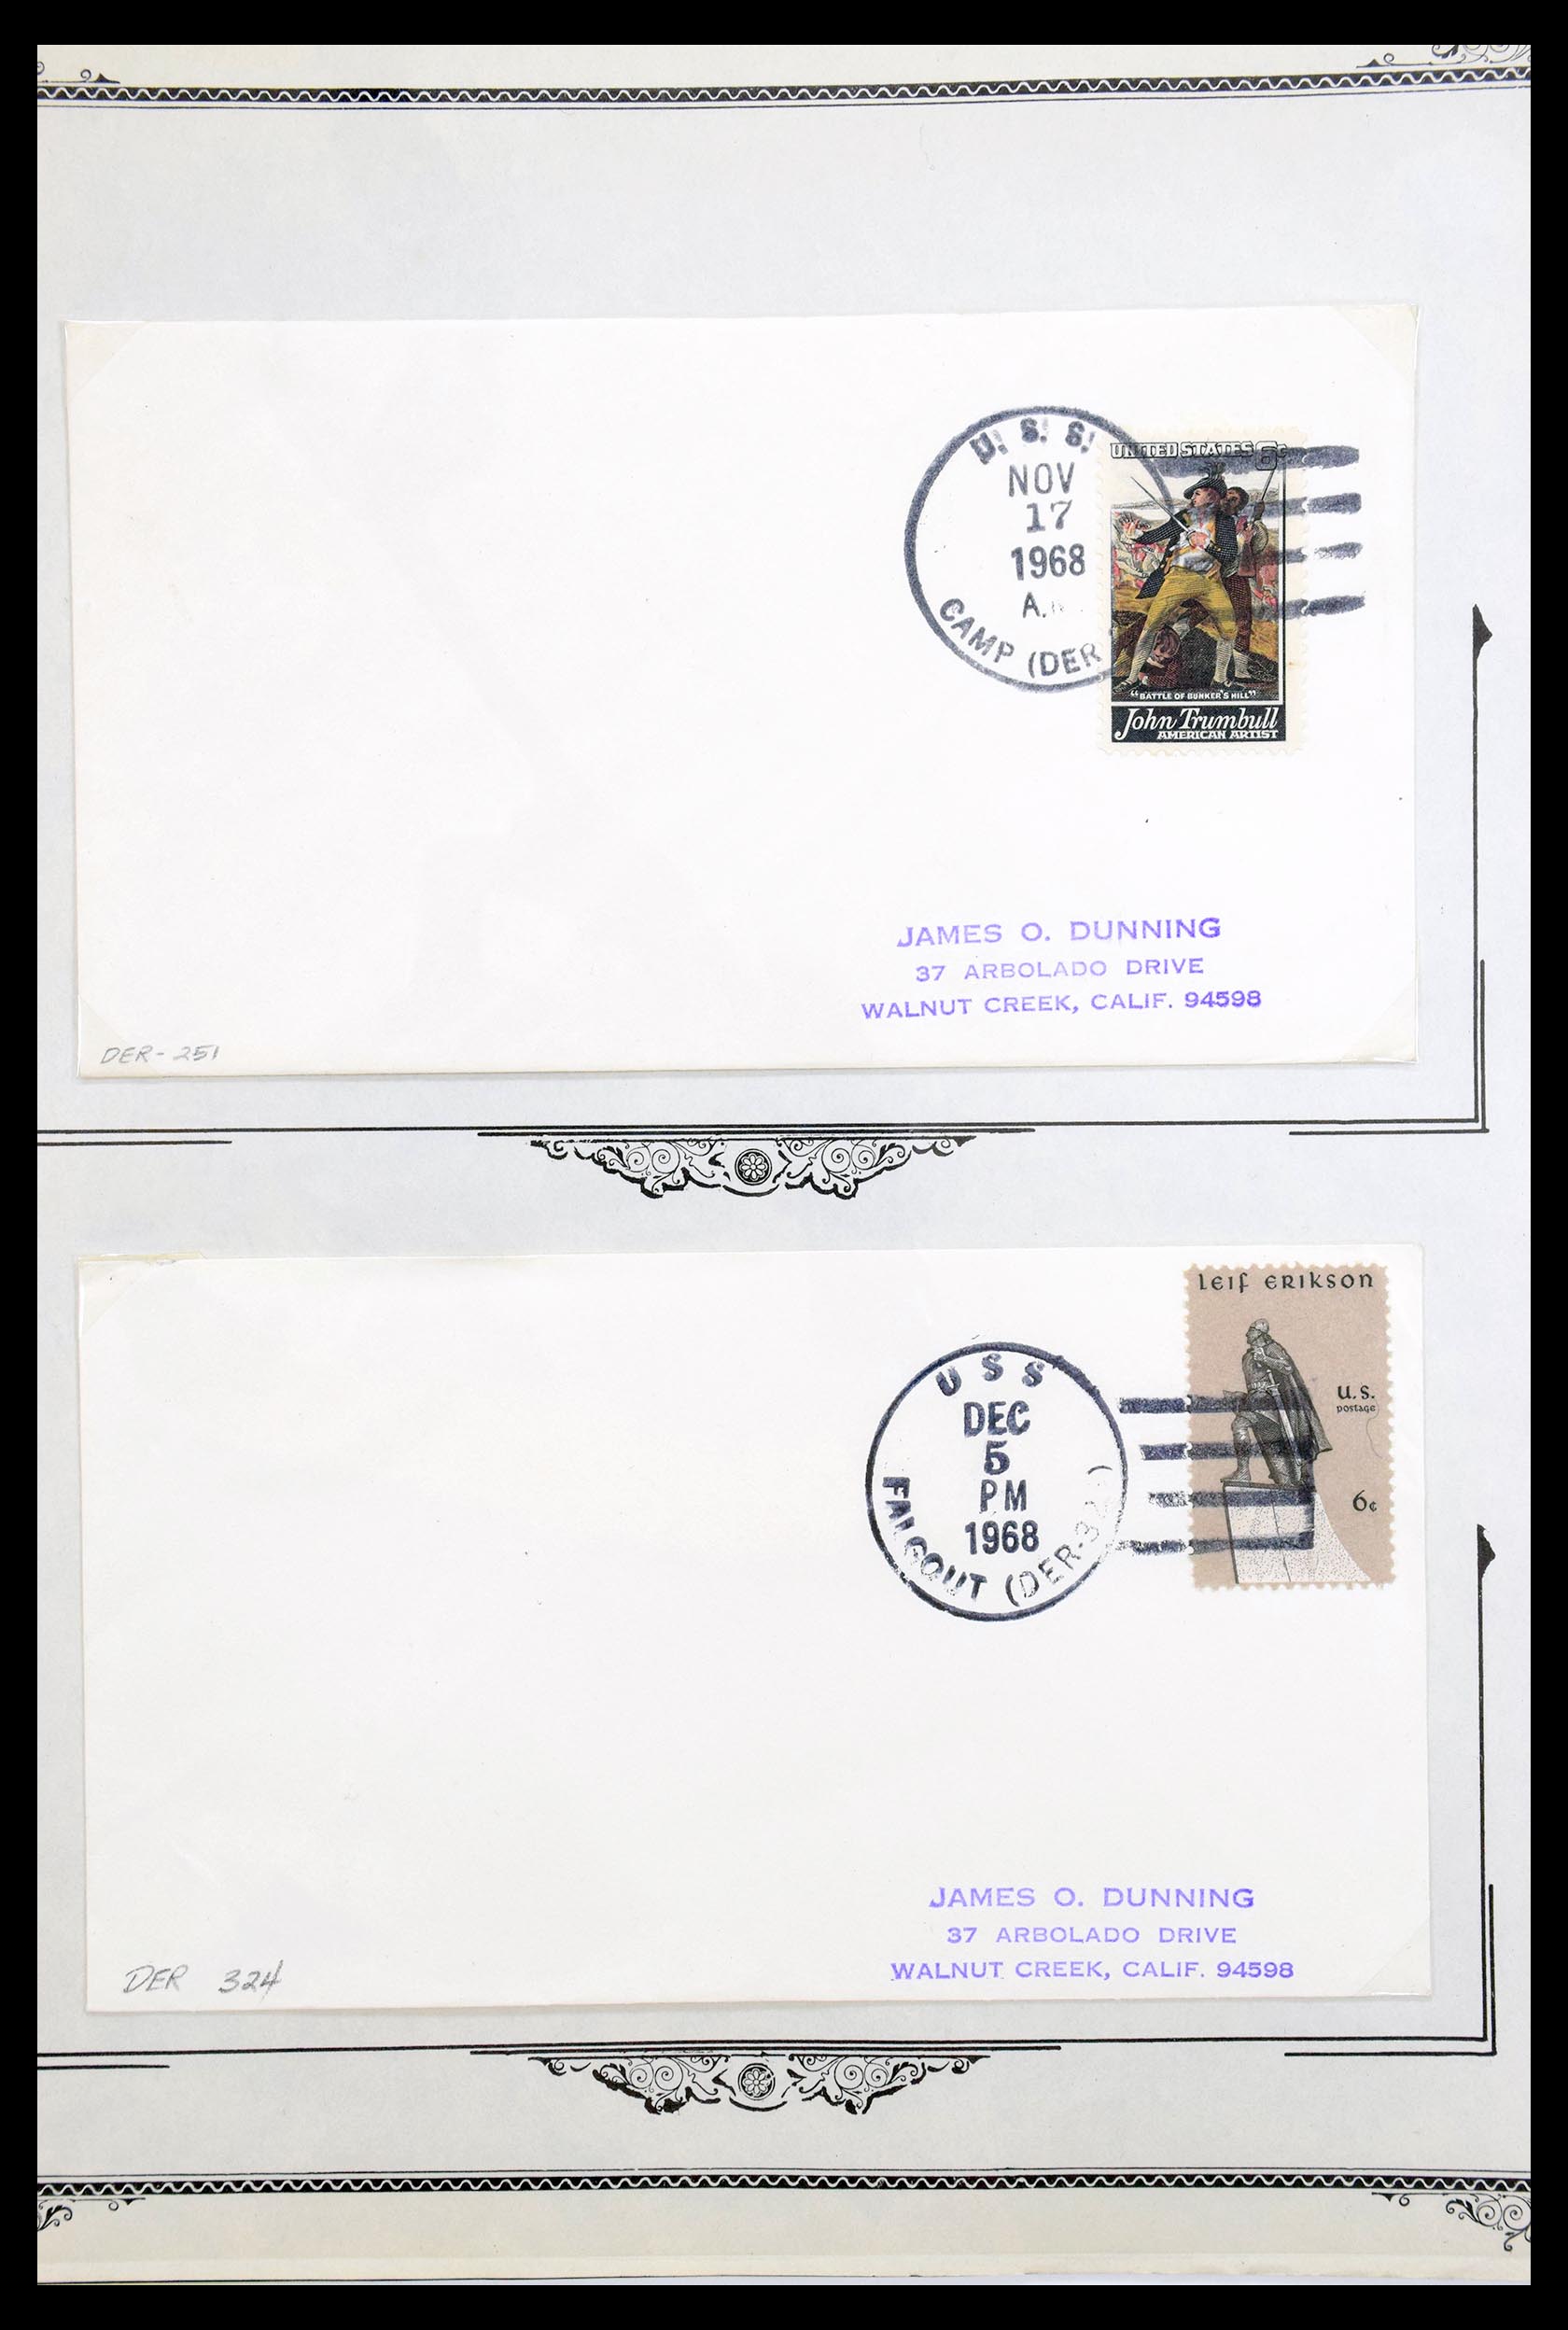 30341 091 - 30341 USA scheepspost brieven 1930-1970.